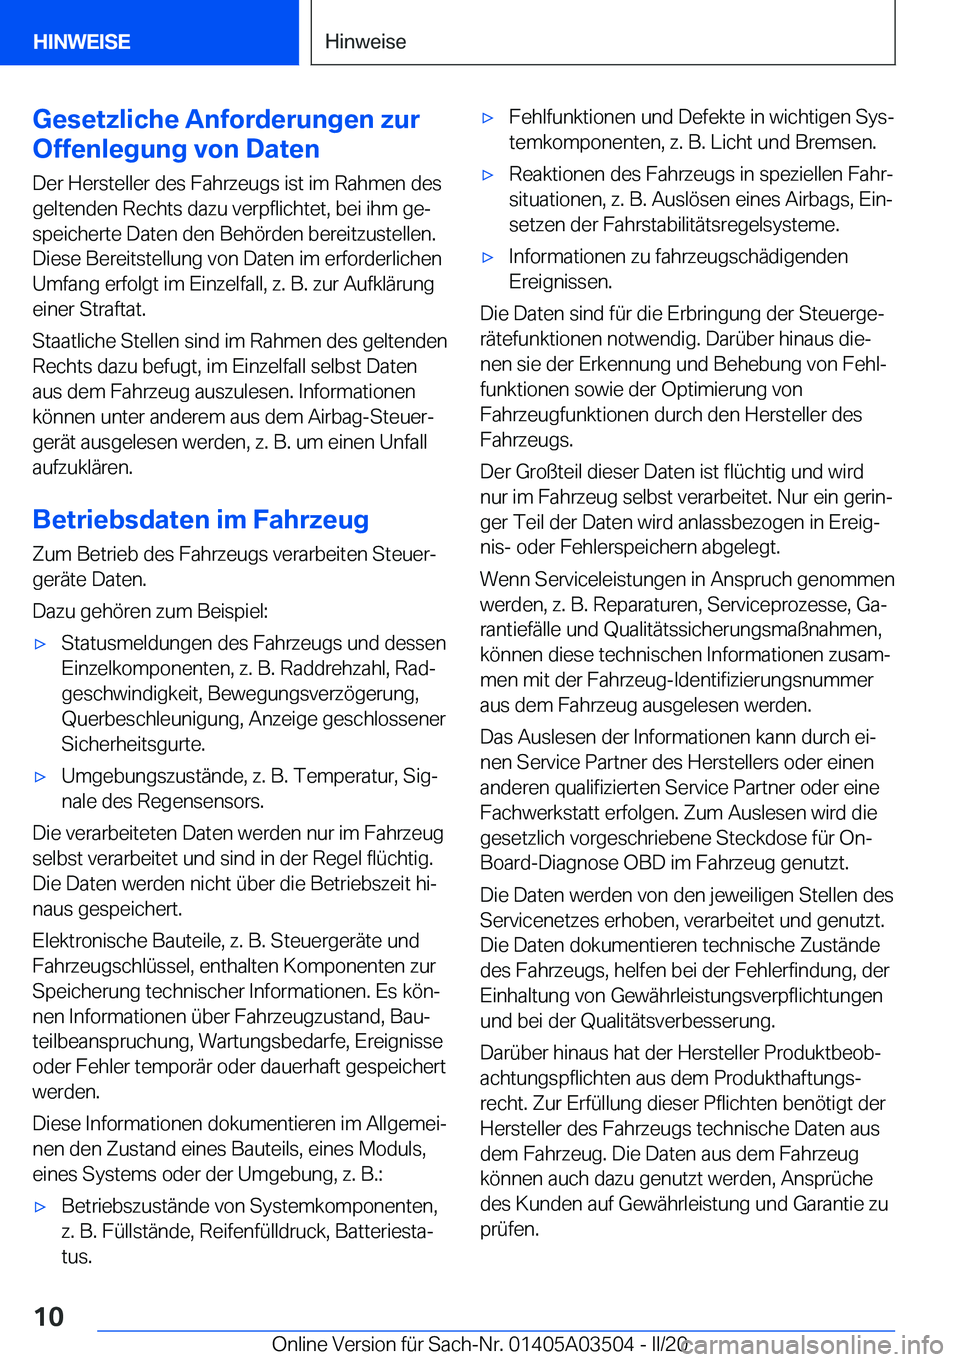 BMW X3 2020  Betriebsanleitungen (in German) �G�e�s�e�t�z�l�i�c�h�e��A�n�f�o�r�d�e�r�u�n�g�e�n��z�u�r
�O�f�f�e�n�l�e�g�u�n�g��v�o�n��D�a�t�e�n
�D�e�r��H�e�r�s�t�e�l�l�e�r��d�e�s��F�a�h�r�z�e�u�g�s��i�s�t��i�m��R�a�h�m�e�n��d�e�s
�g�e�